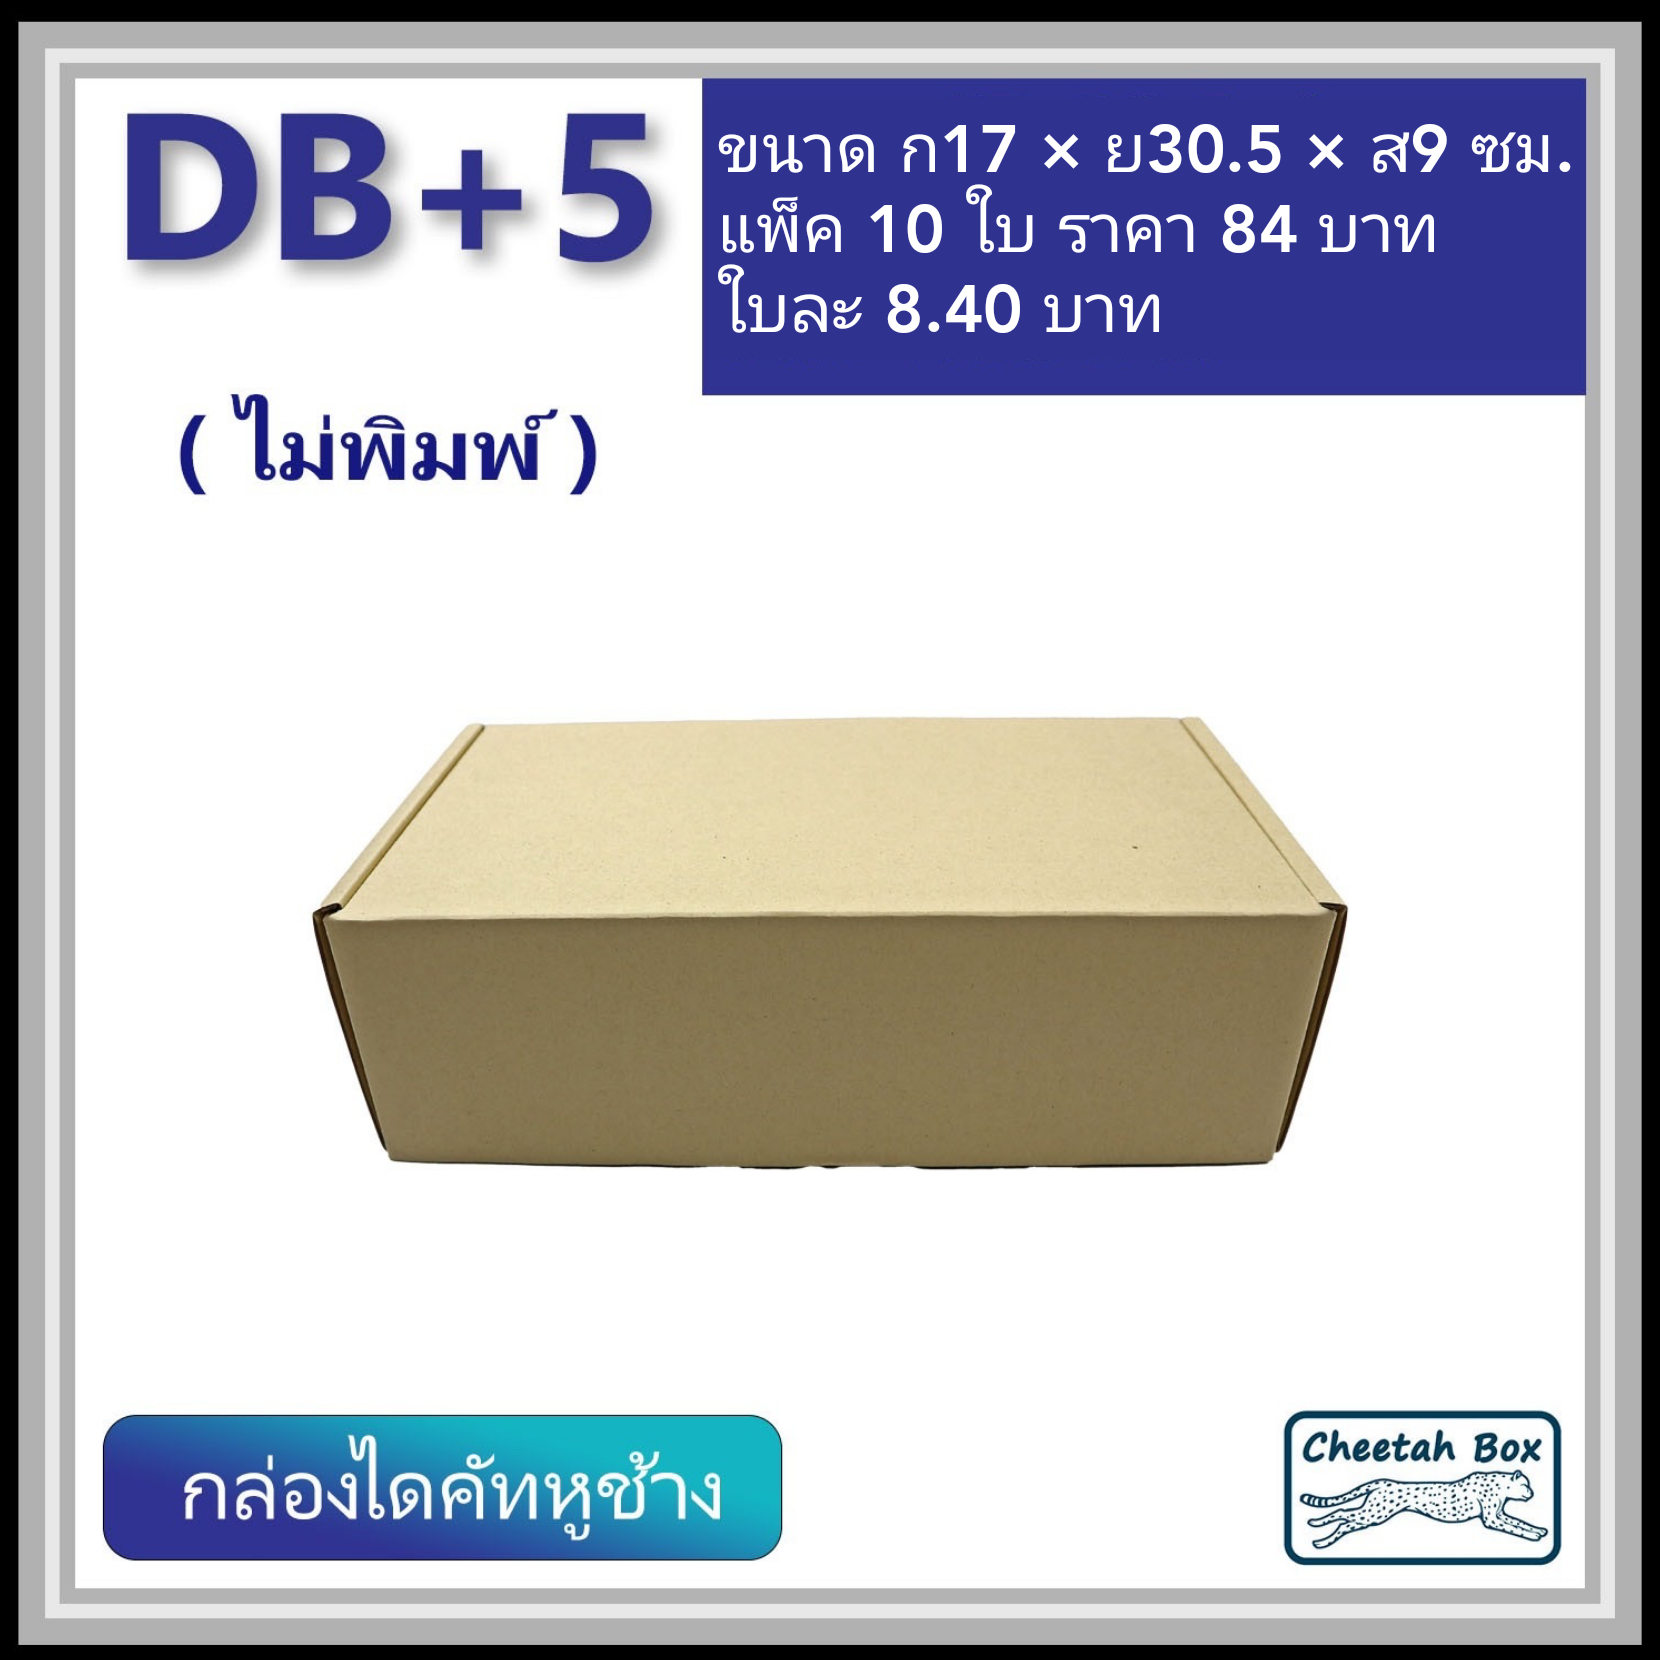 กล่องไดคัทหูช้าง B+5 cm รหัส DB+5 ไม่พิมพ์ (Cheetah Box) 17W x 30.5L x 9H cm.